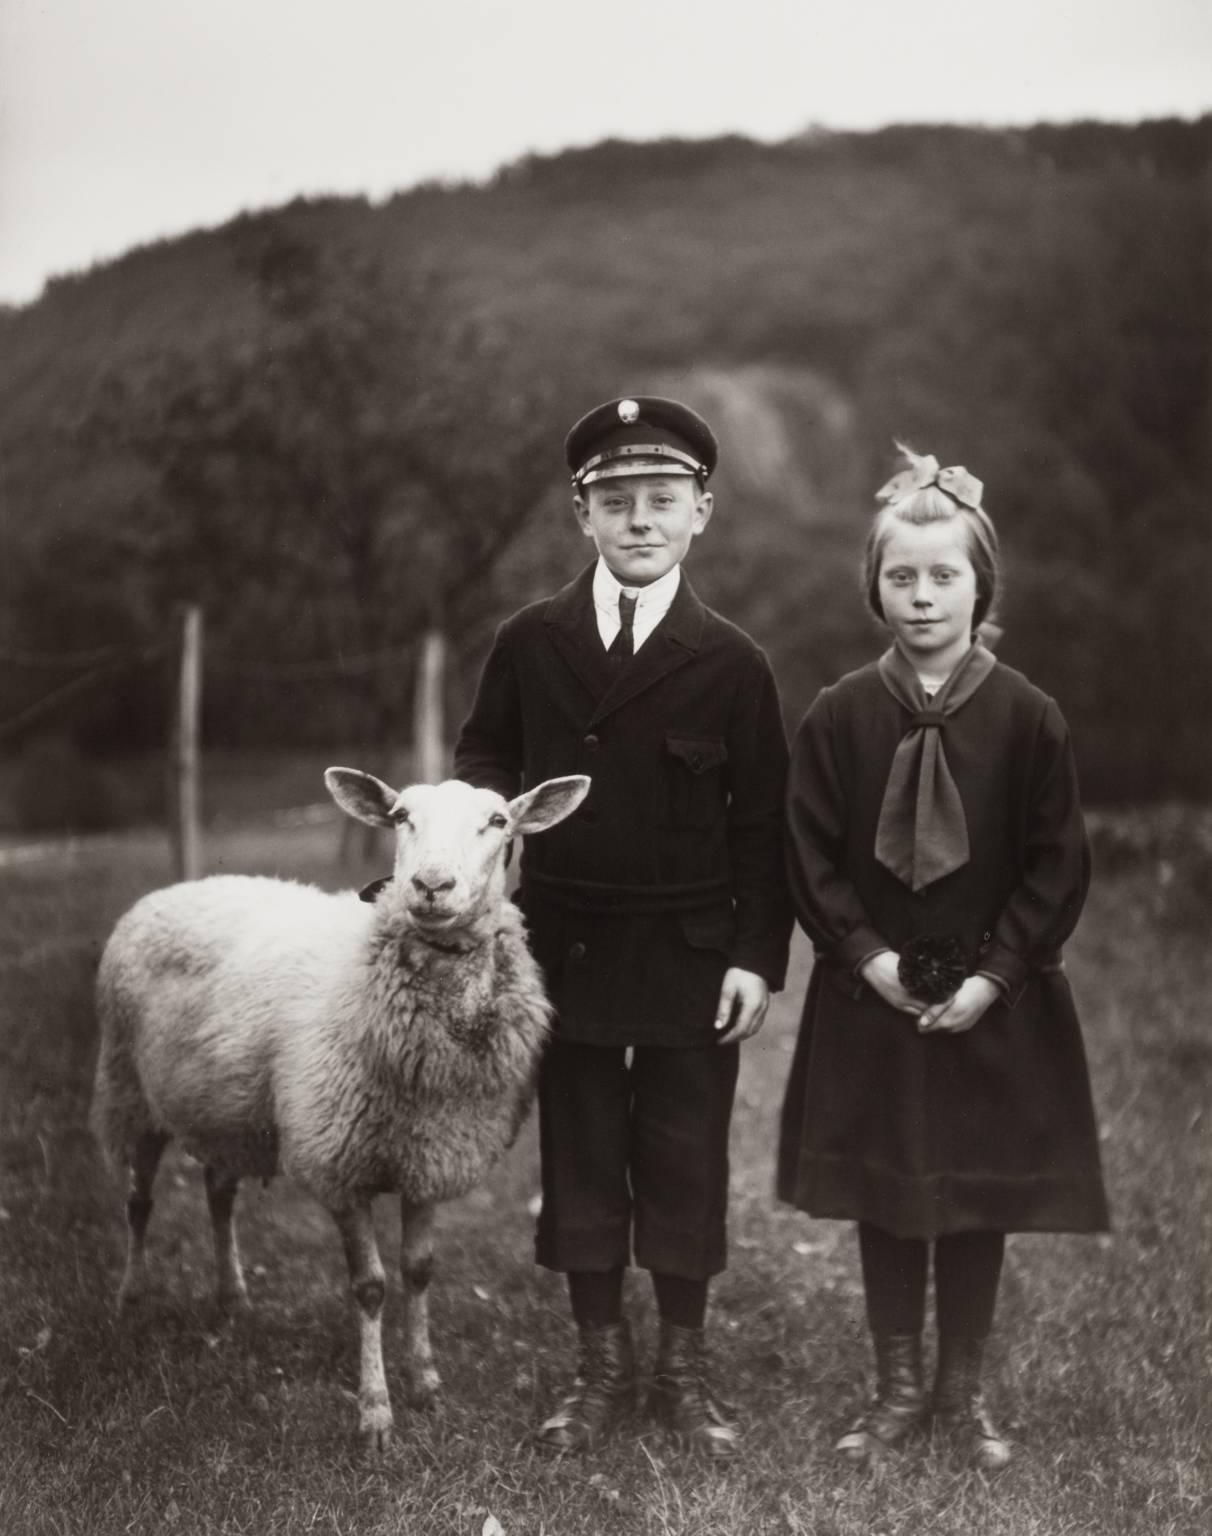 August Sander Portrait Photograph - Farm Children